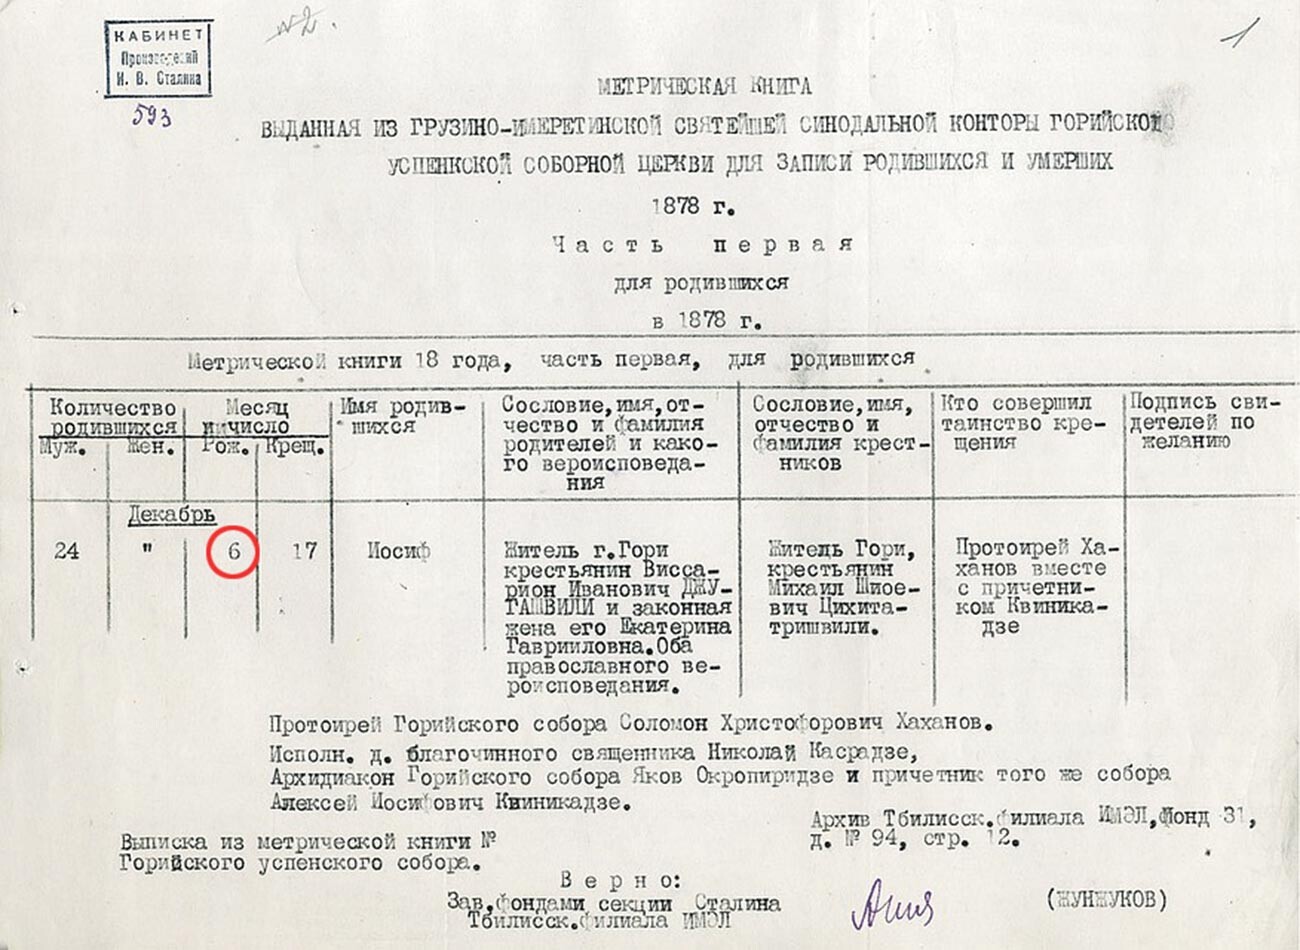 Метрическая книга Успенской церкви в Гори с указанием даты рождения Сталина (Джугашвили) – 6 декабря 1878 года